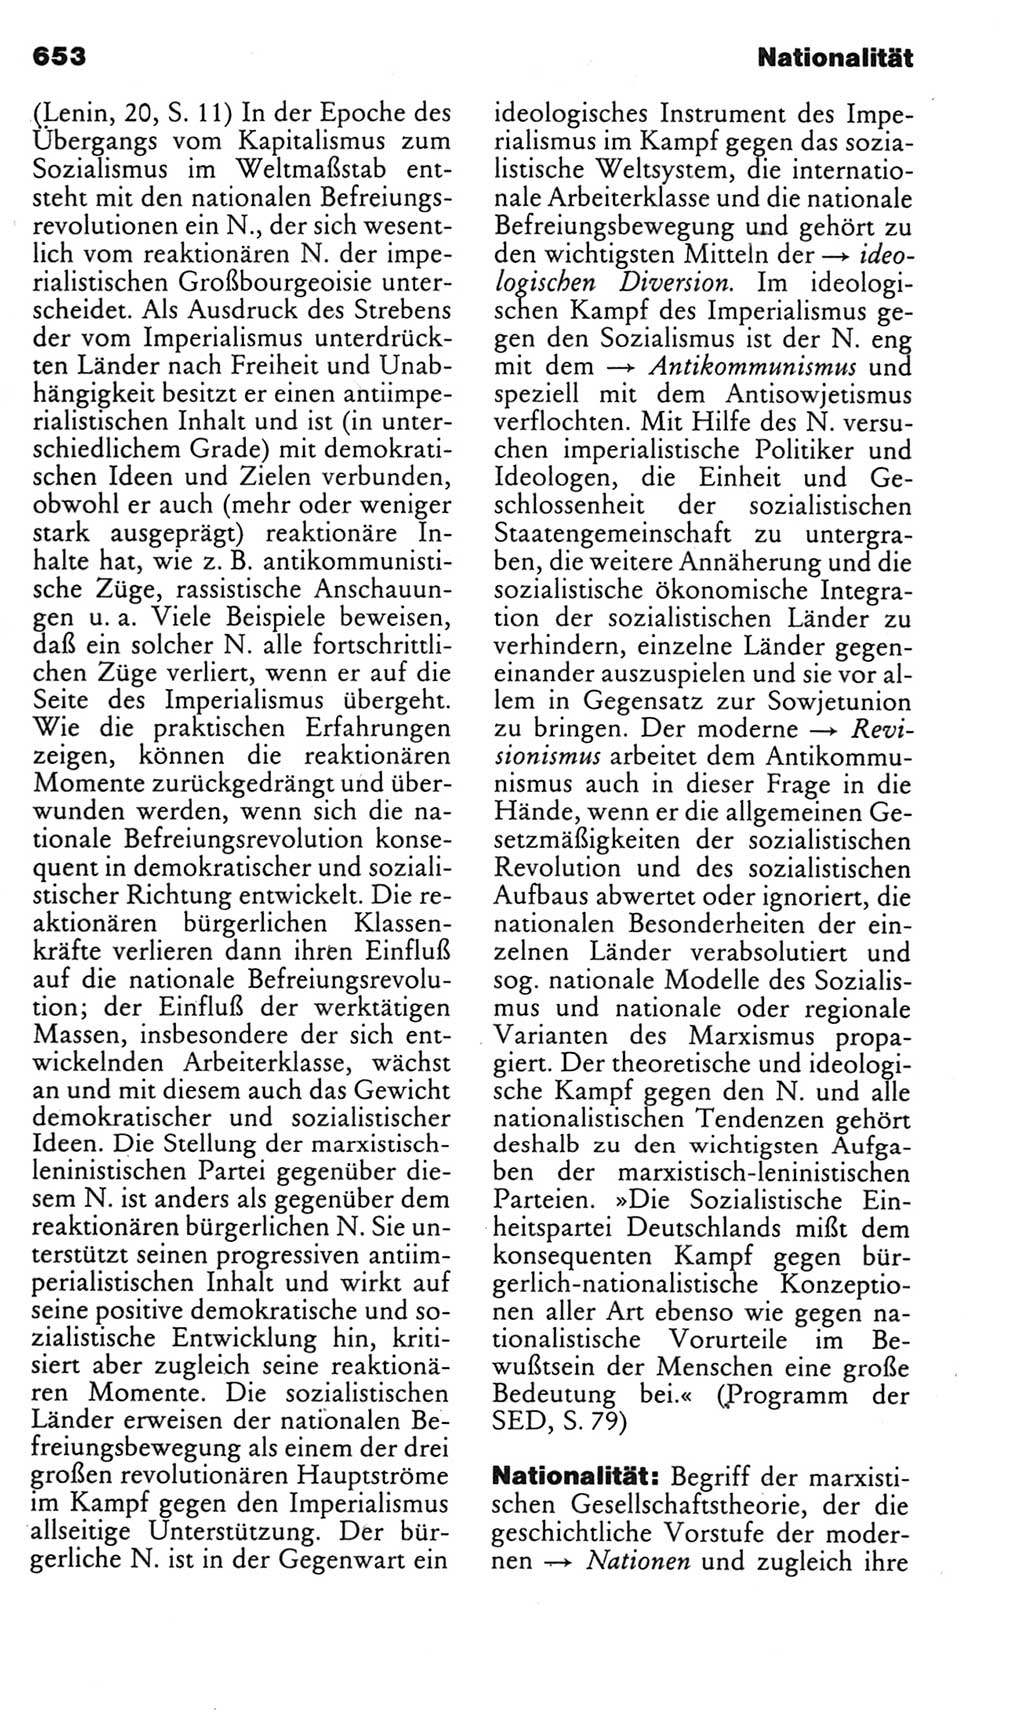 Kleines politisches Wörterbuch [Deutsche Demokratische Republik (DDR)] 1985, Seite 653 (Kl. pol. Wb. DDR 1985, S. 653)